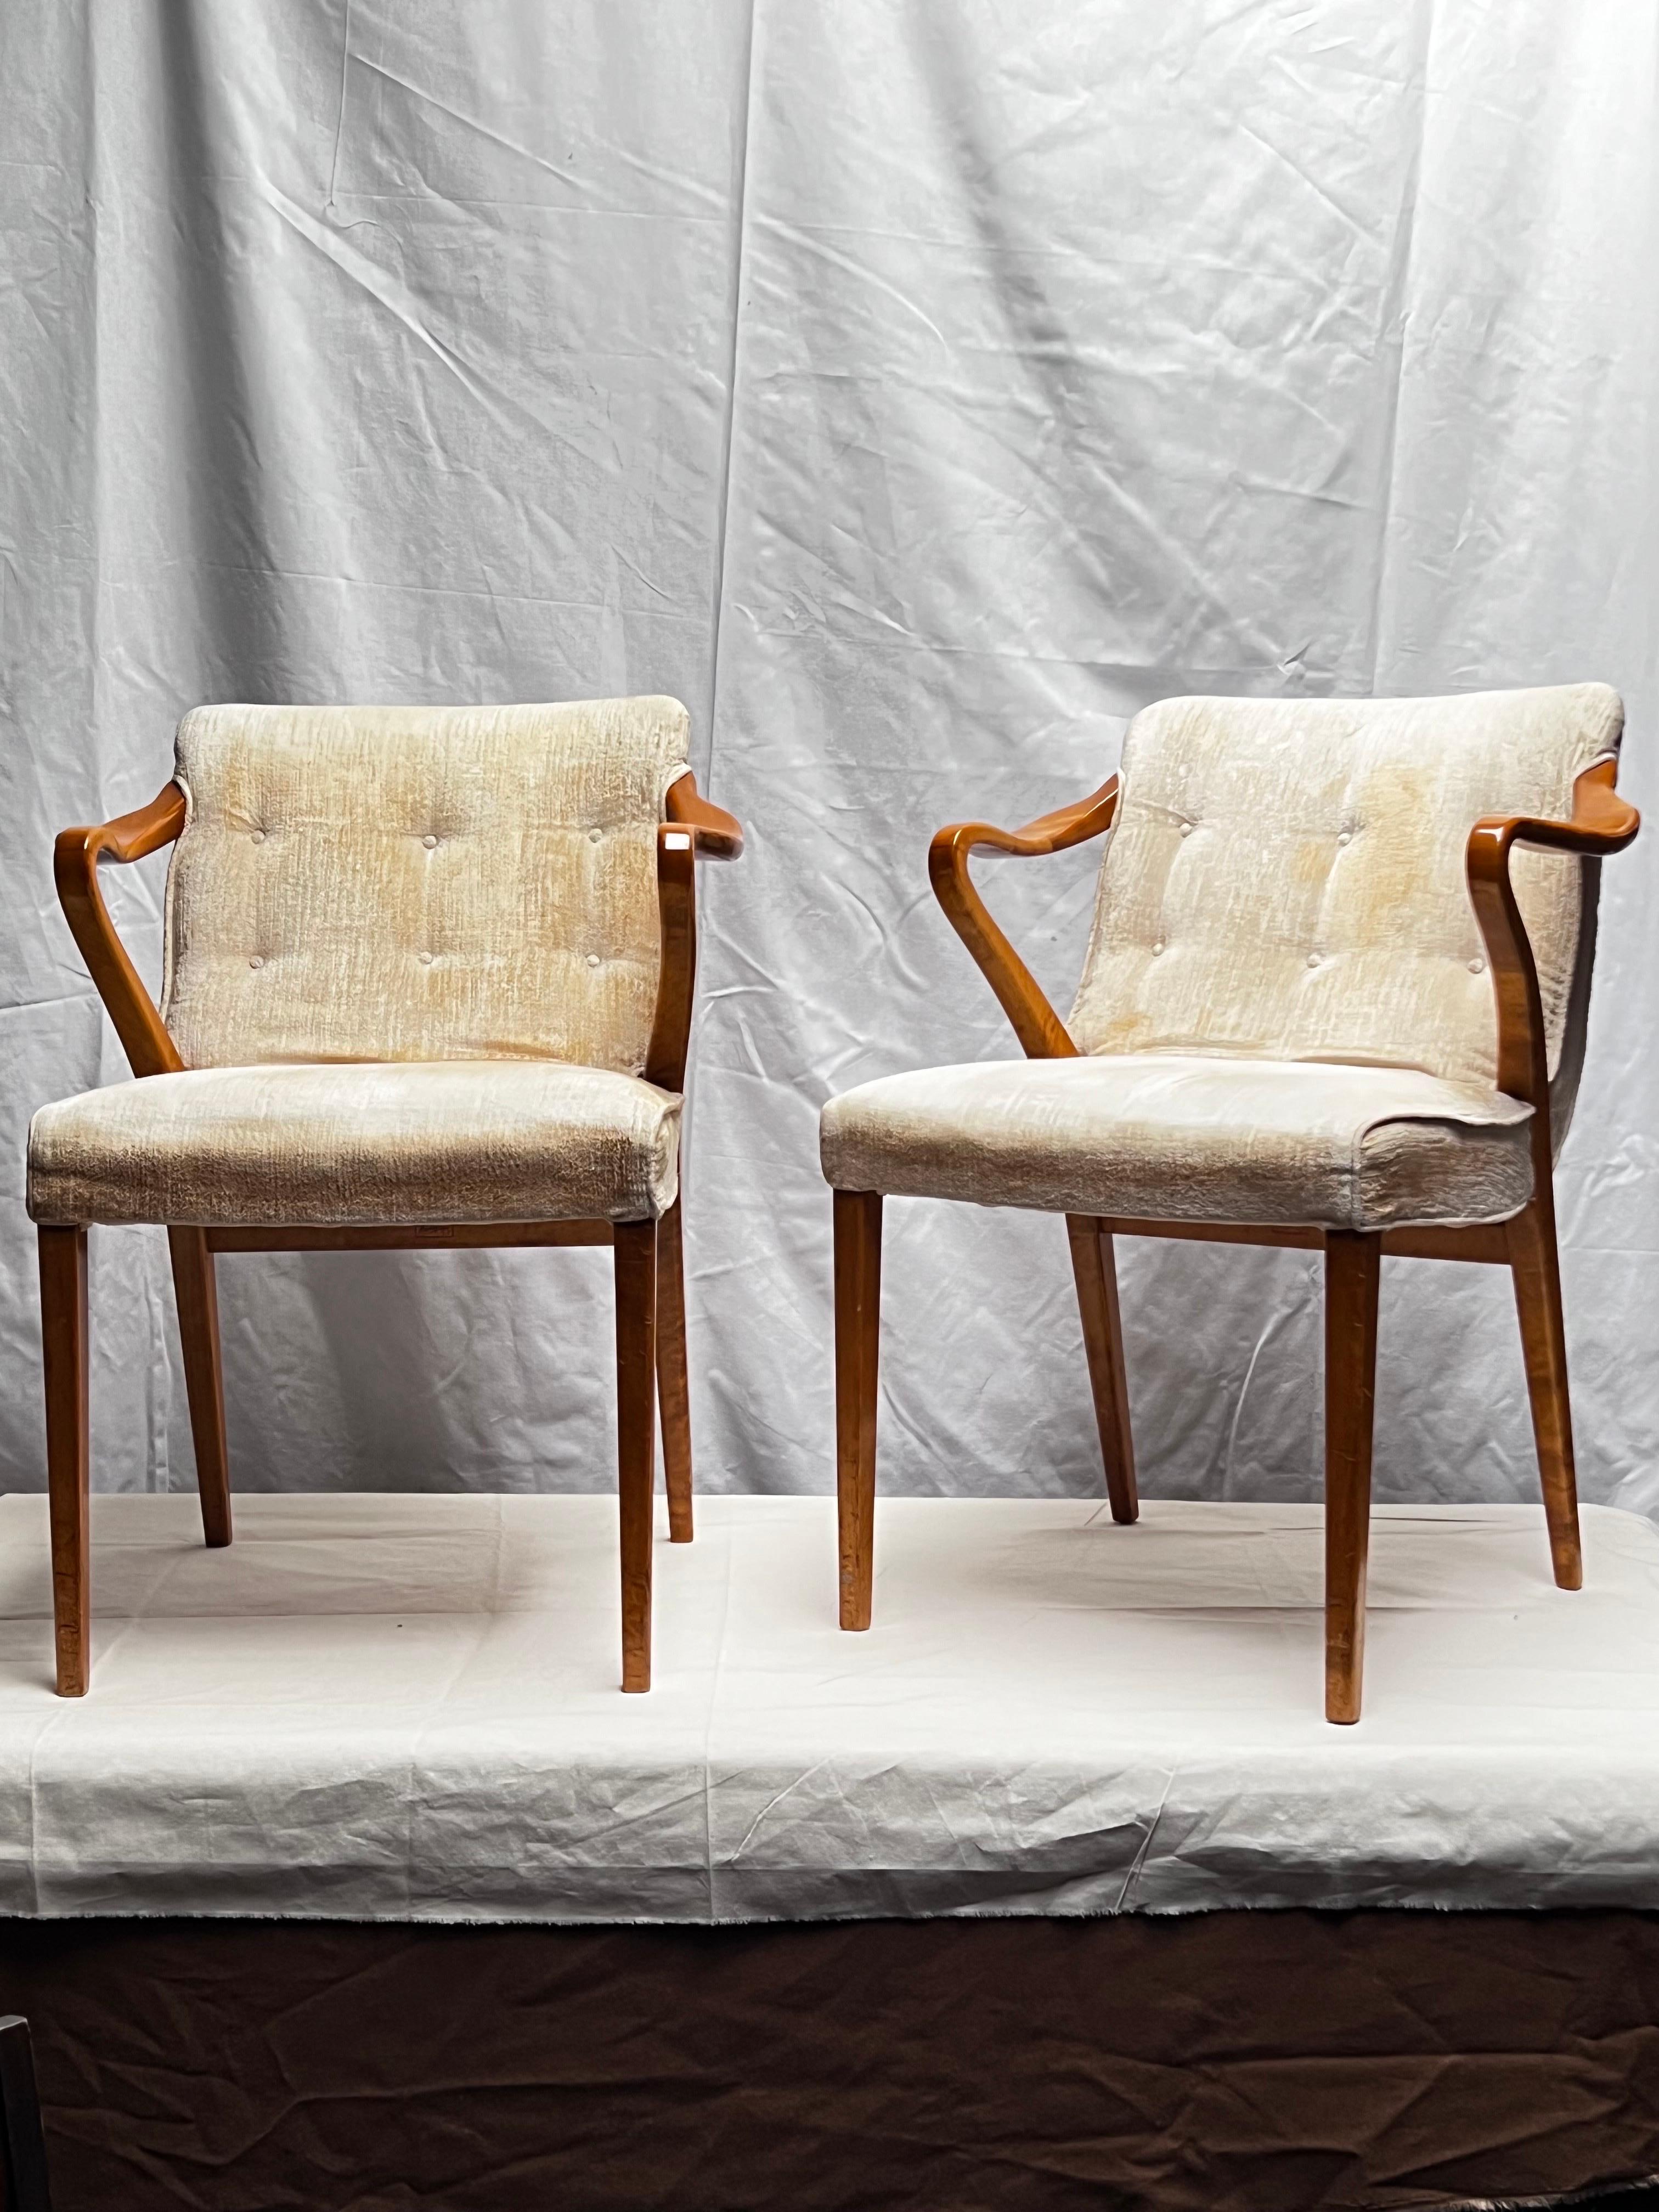 Ceci est une paire de fauteuils à accoudoirs de l'architecte Suédois Axel Larsson. Ils ont été produits par la firme SMF Bodafors début des années 1930. Le tissus et le bois sont dans leur état d'origine présentant une belle patine et une agréable